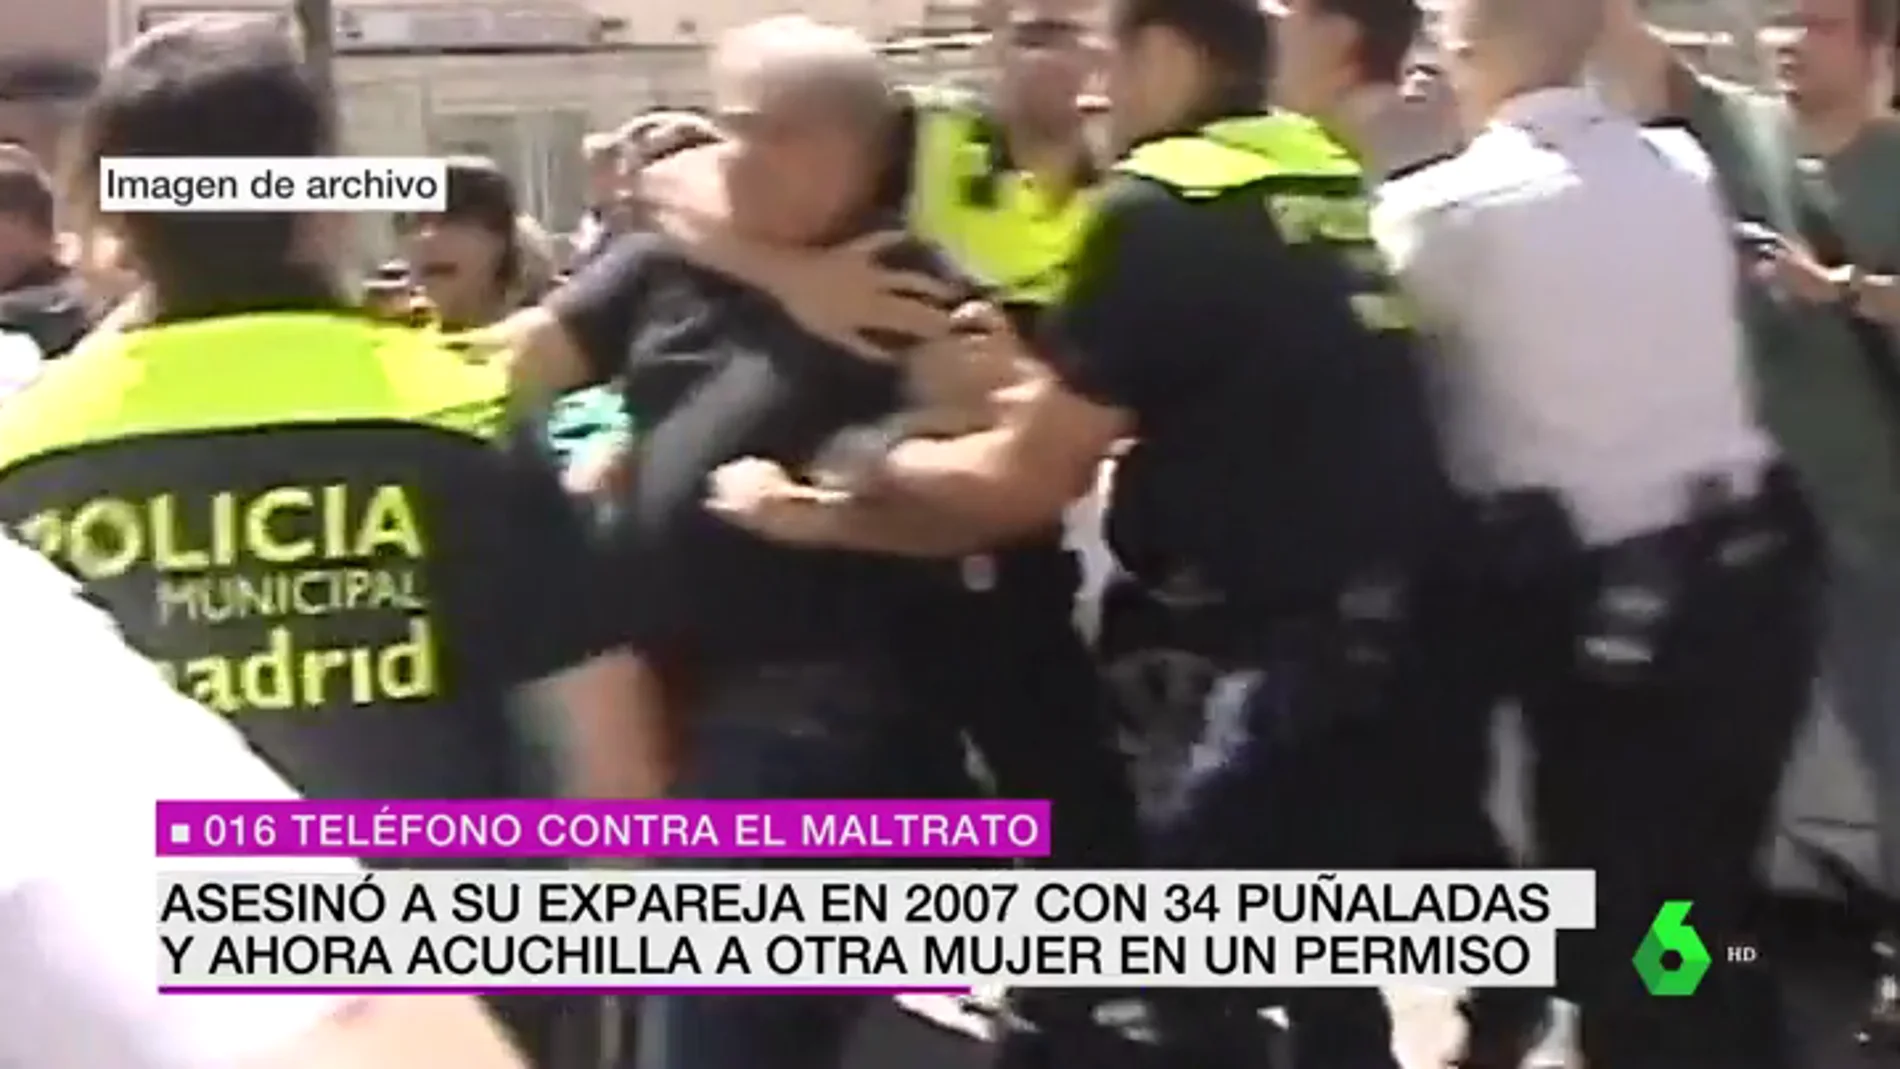 Detienen en Madrid a un condenado por matar a una mujer tras apuñalar a otra durante un permiso penitenciario